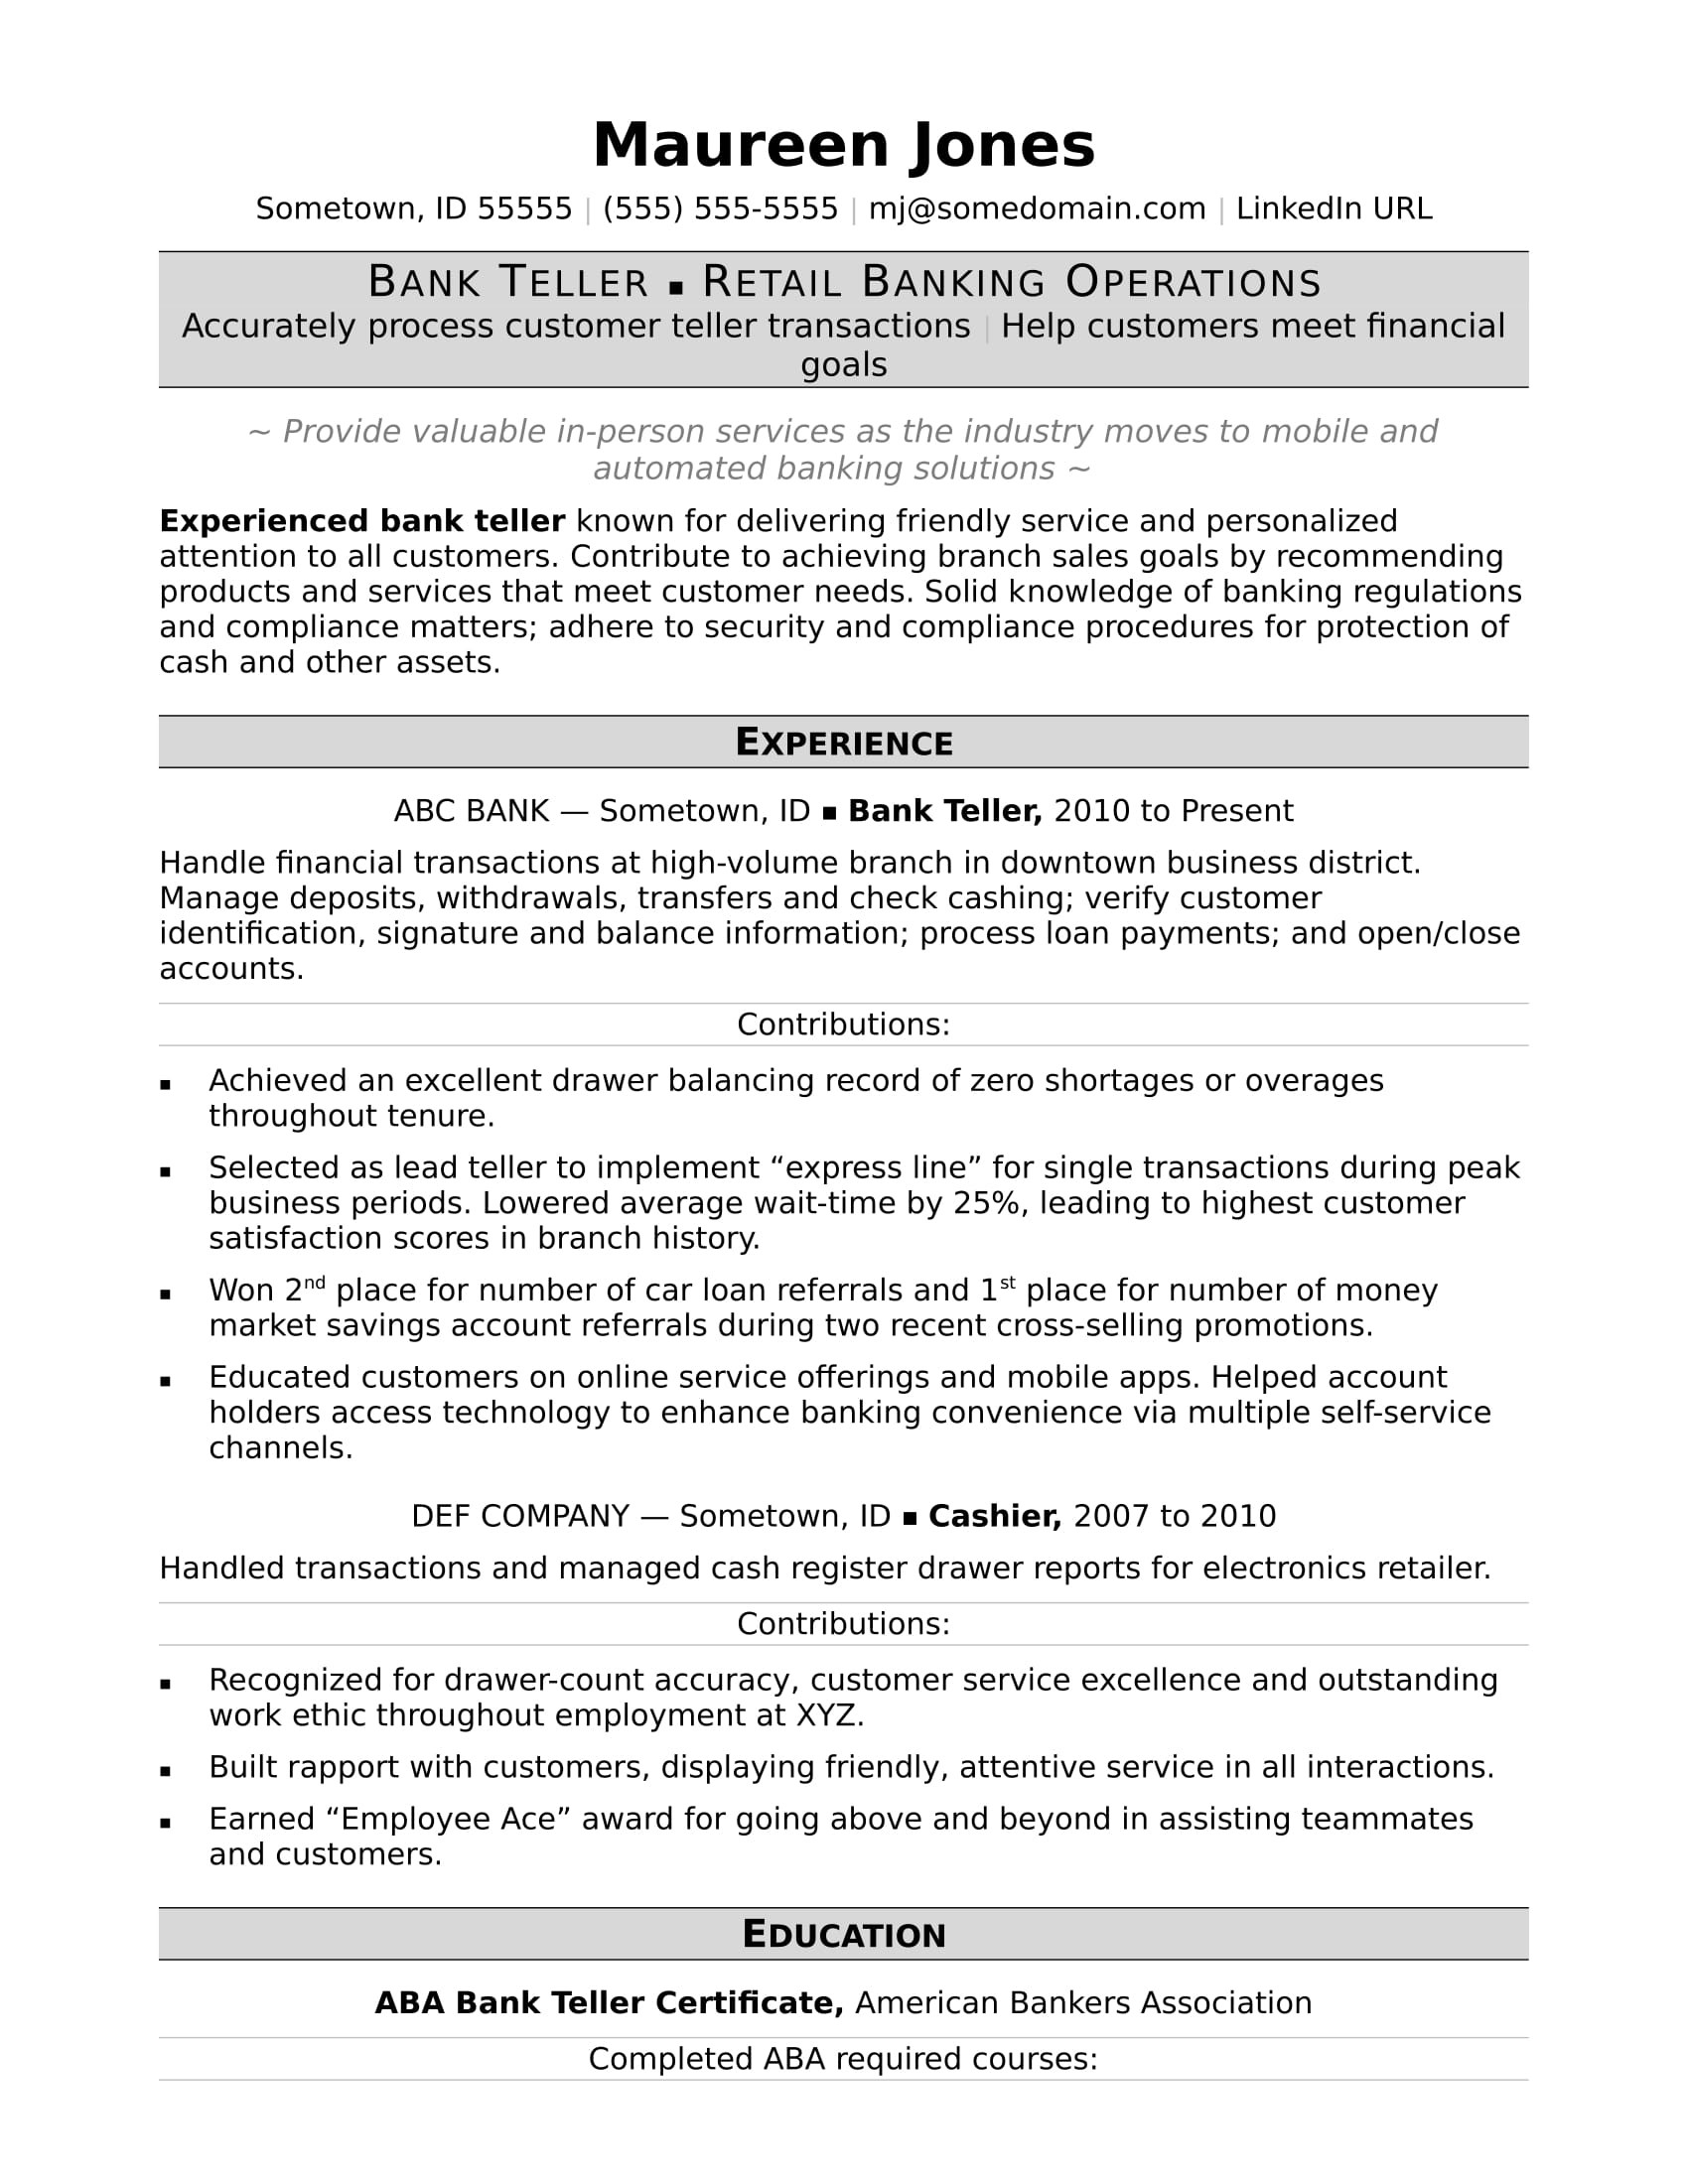 Free Sample Of Bank Teller Resume Bank Teller Resume Monster.com